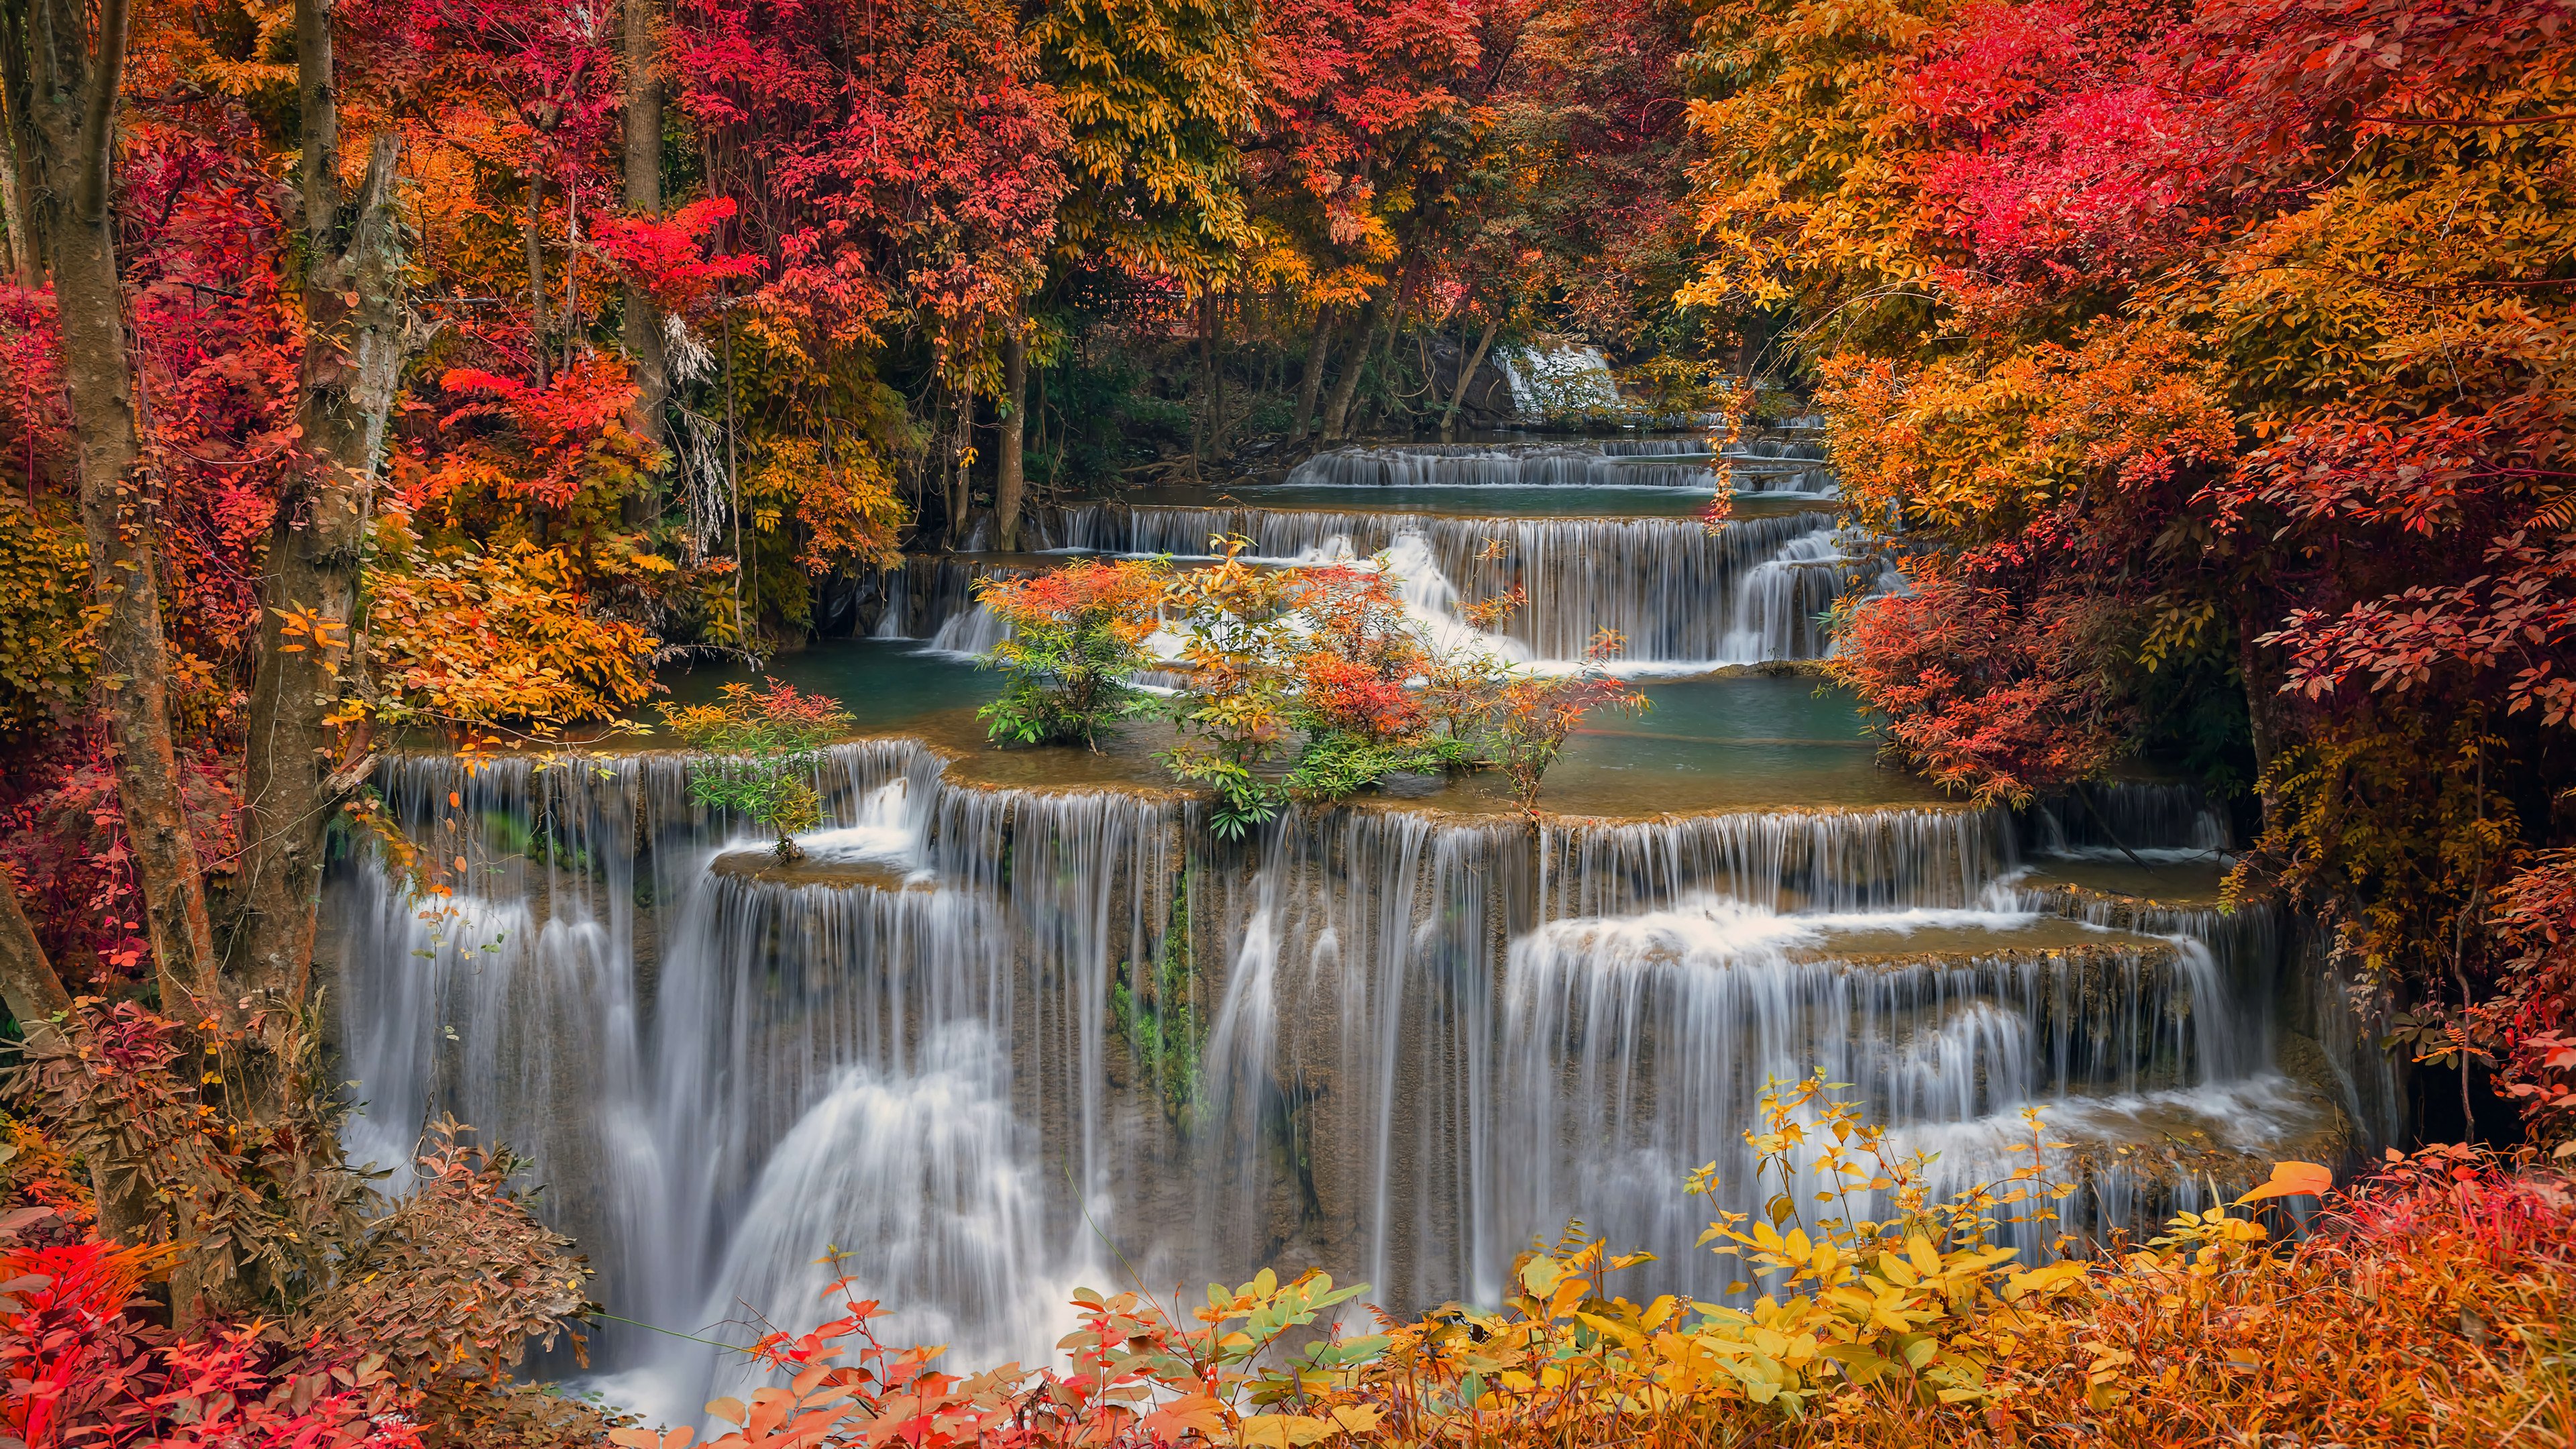 Waterfall in autumn Wallpaper 4k Ultra HD